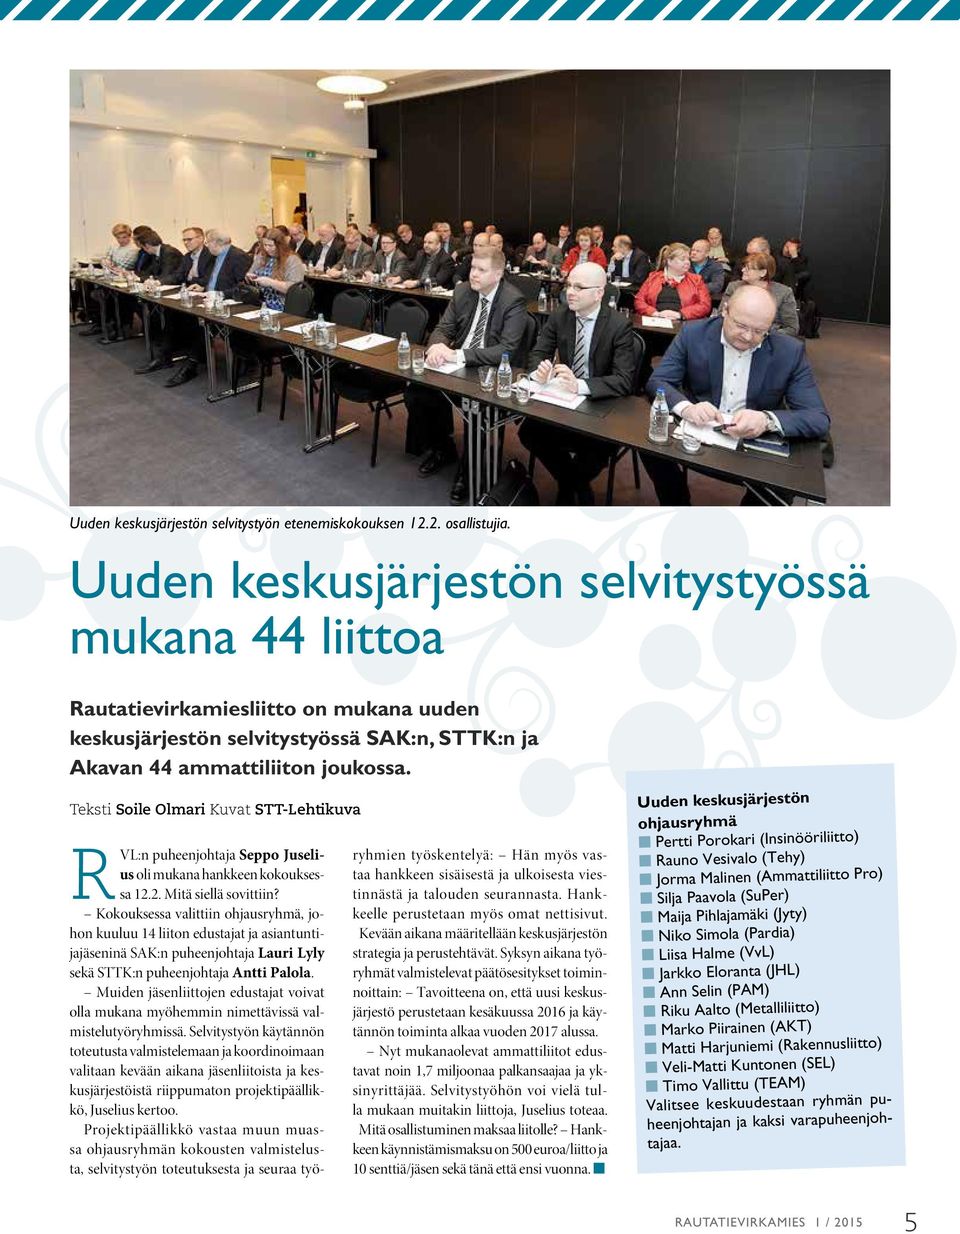 Teksti Soile Olmari Kuvat STT-Lehtikuva RVL:n puheenjohtaja Seppo Juselius oli mukana hankkeen kokouksessa 12.2. Mitä siellä sovittiin?